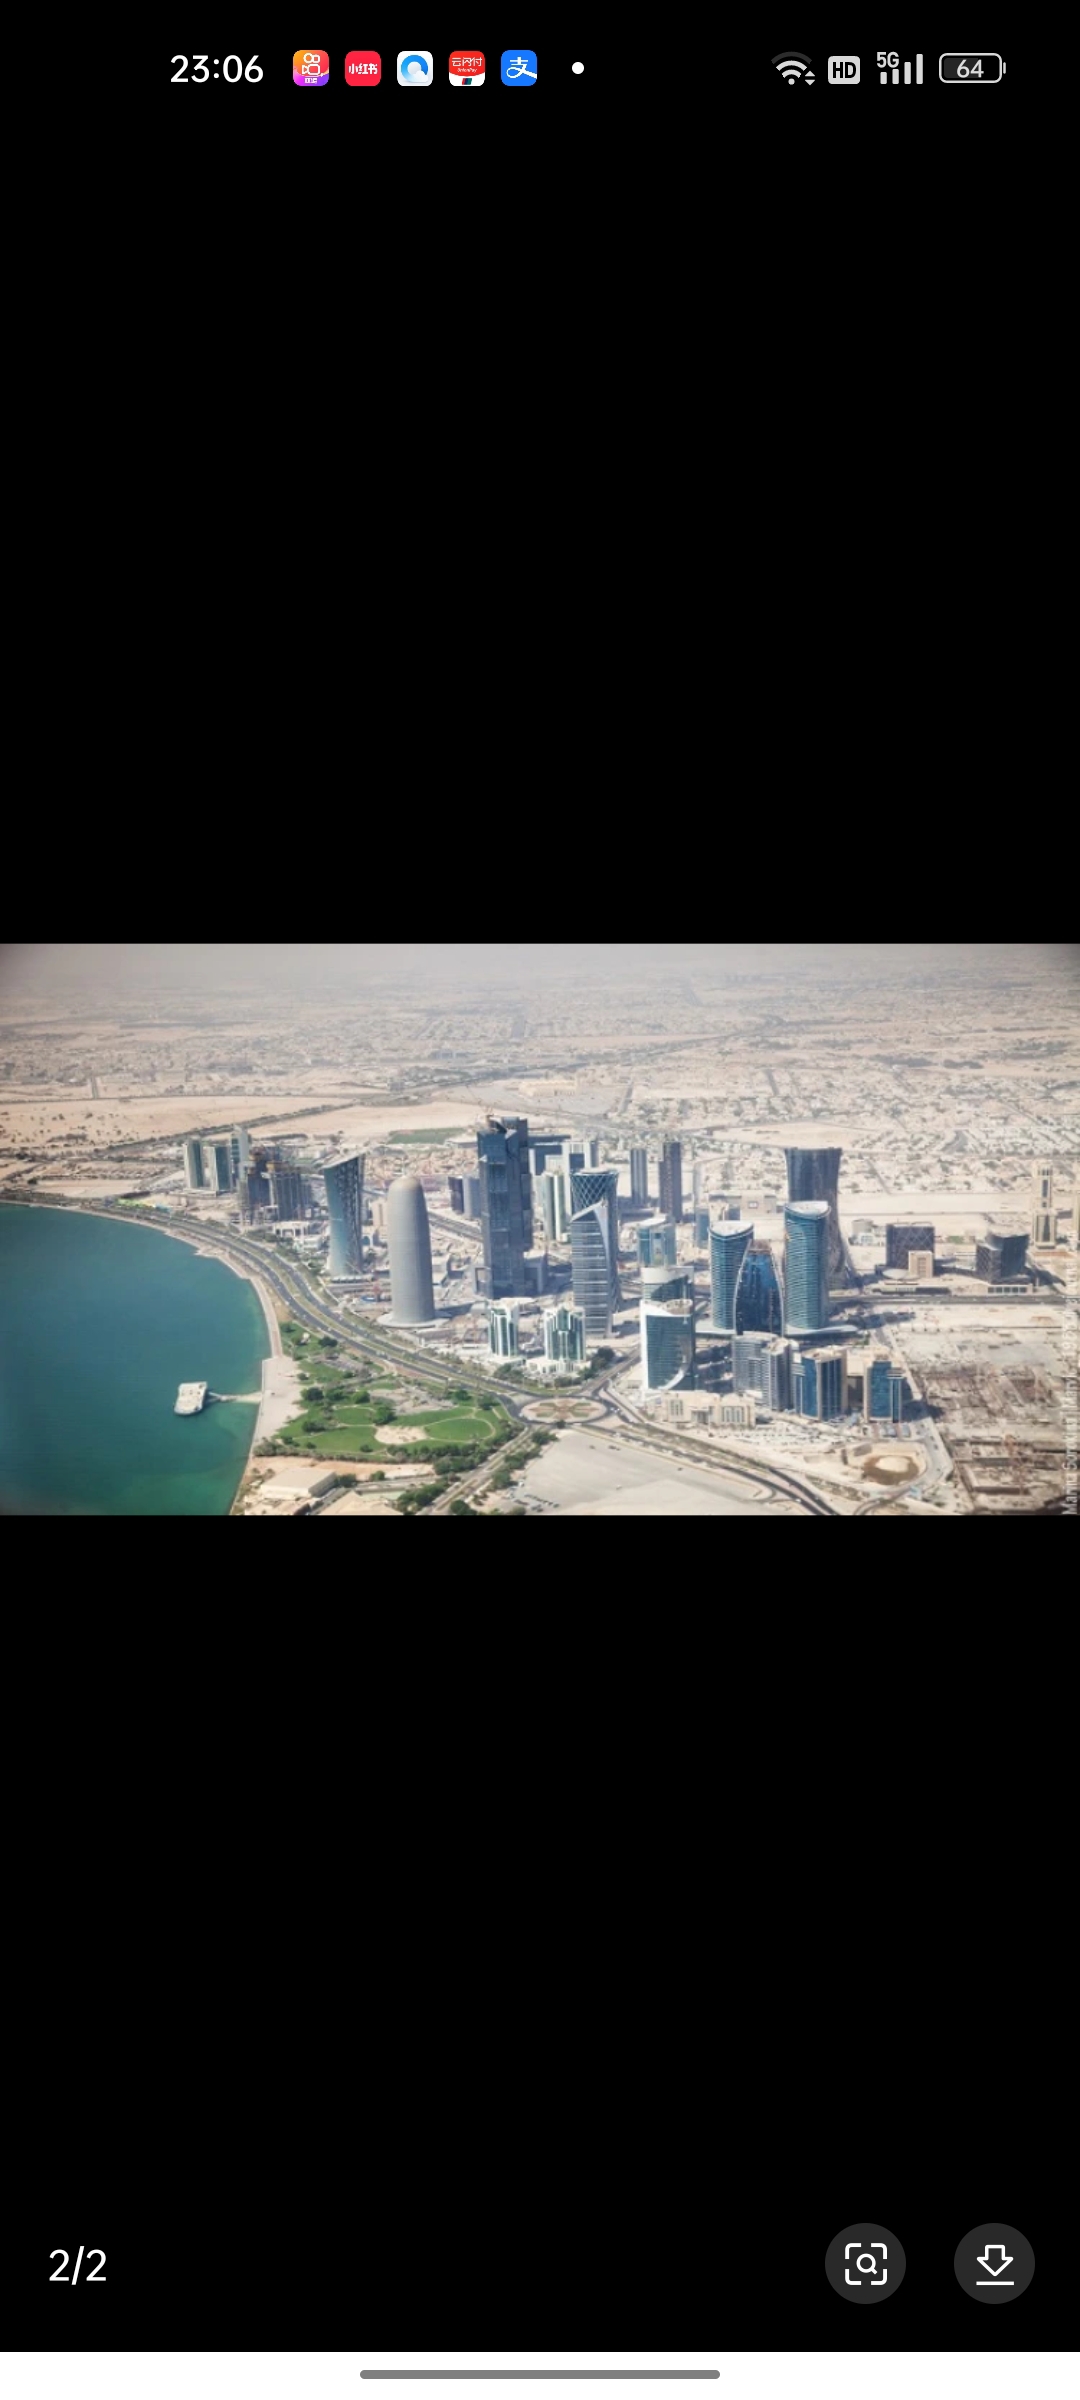 古韦里耶，是卡塔尔的一个区。该区西临波斯湾，北临北部区 (卡塔尔)，东临豪尔区，南临朱迈利耶区。古韦